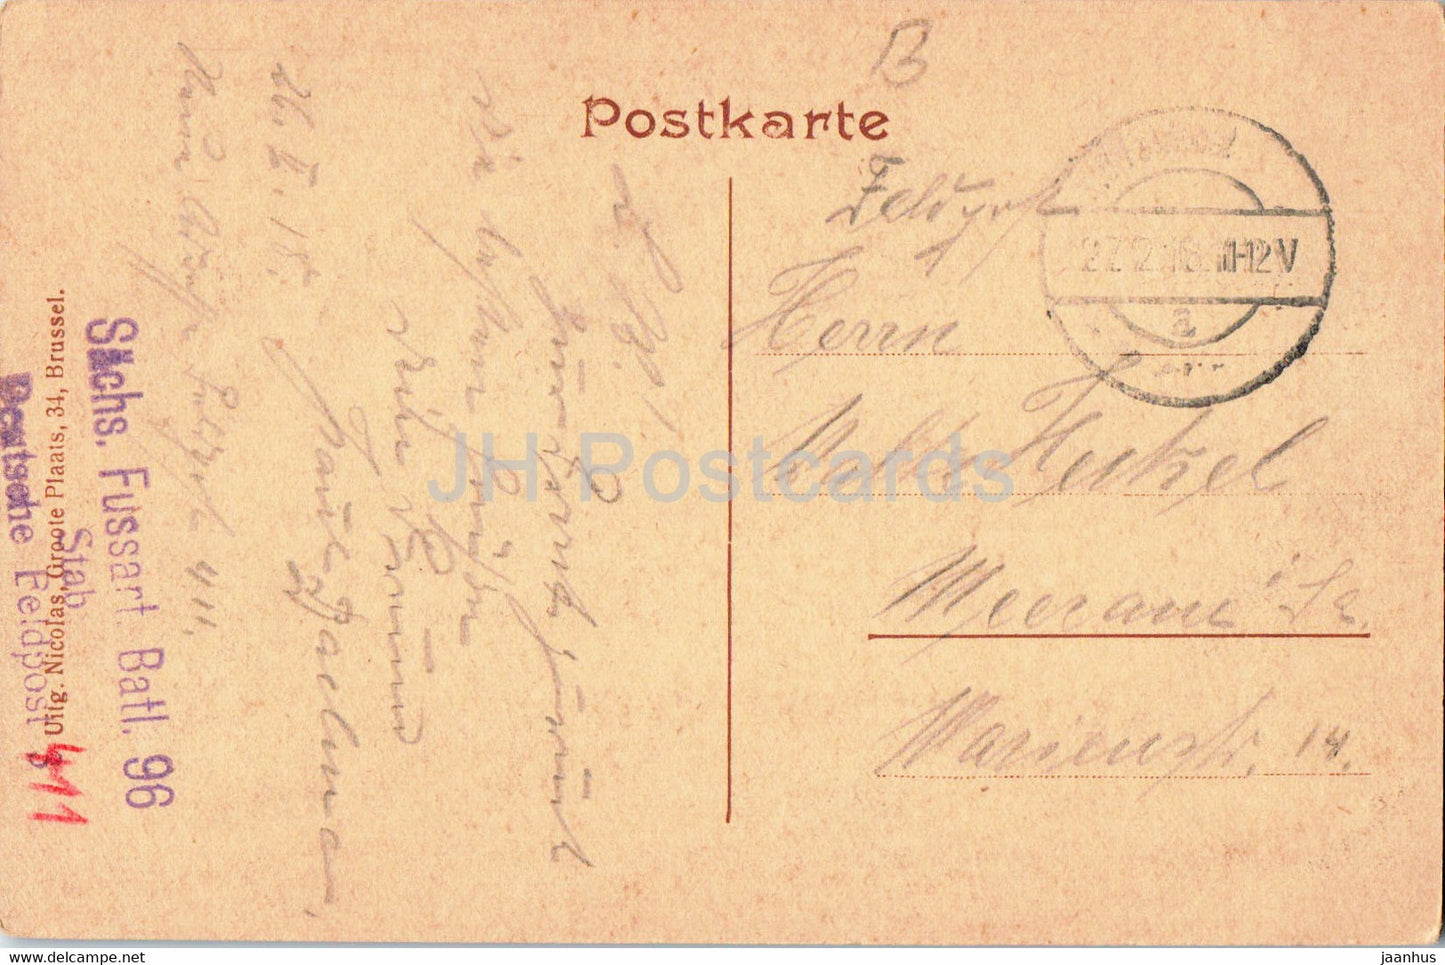 Bruxelles - Bruxelles - Brussel Konigspalast - feldpost - courrier militaire - carte postale ancienne - 1918 - Belgique - utilisé